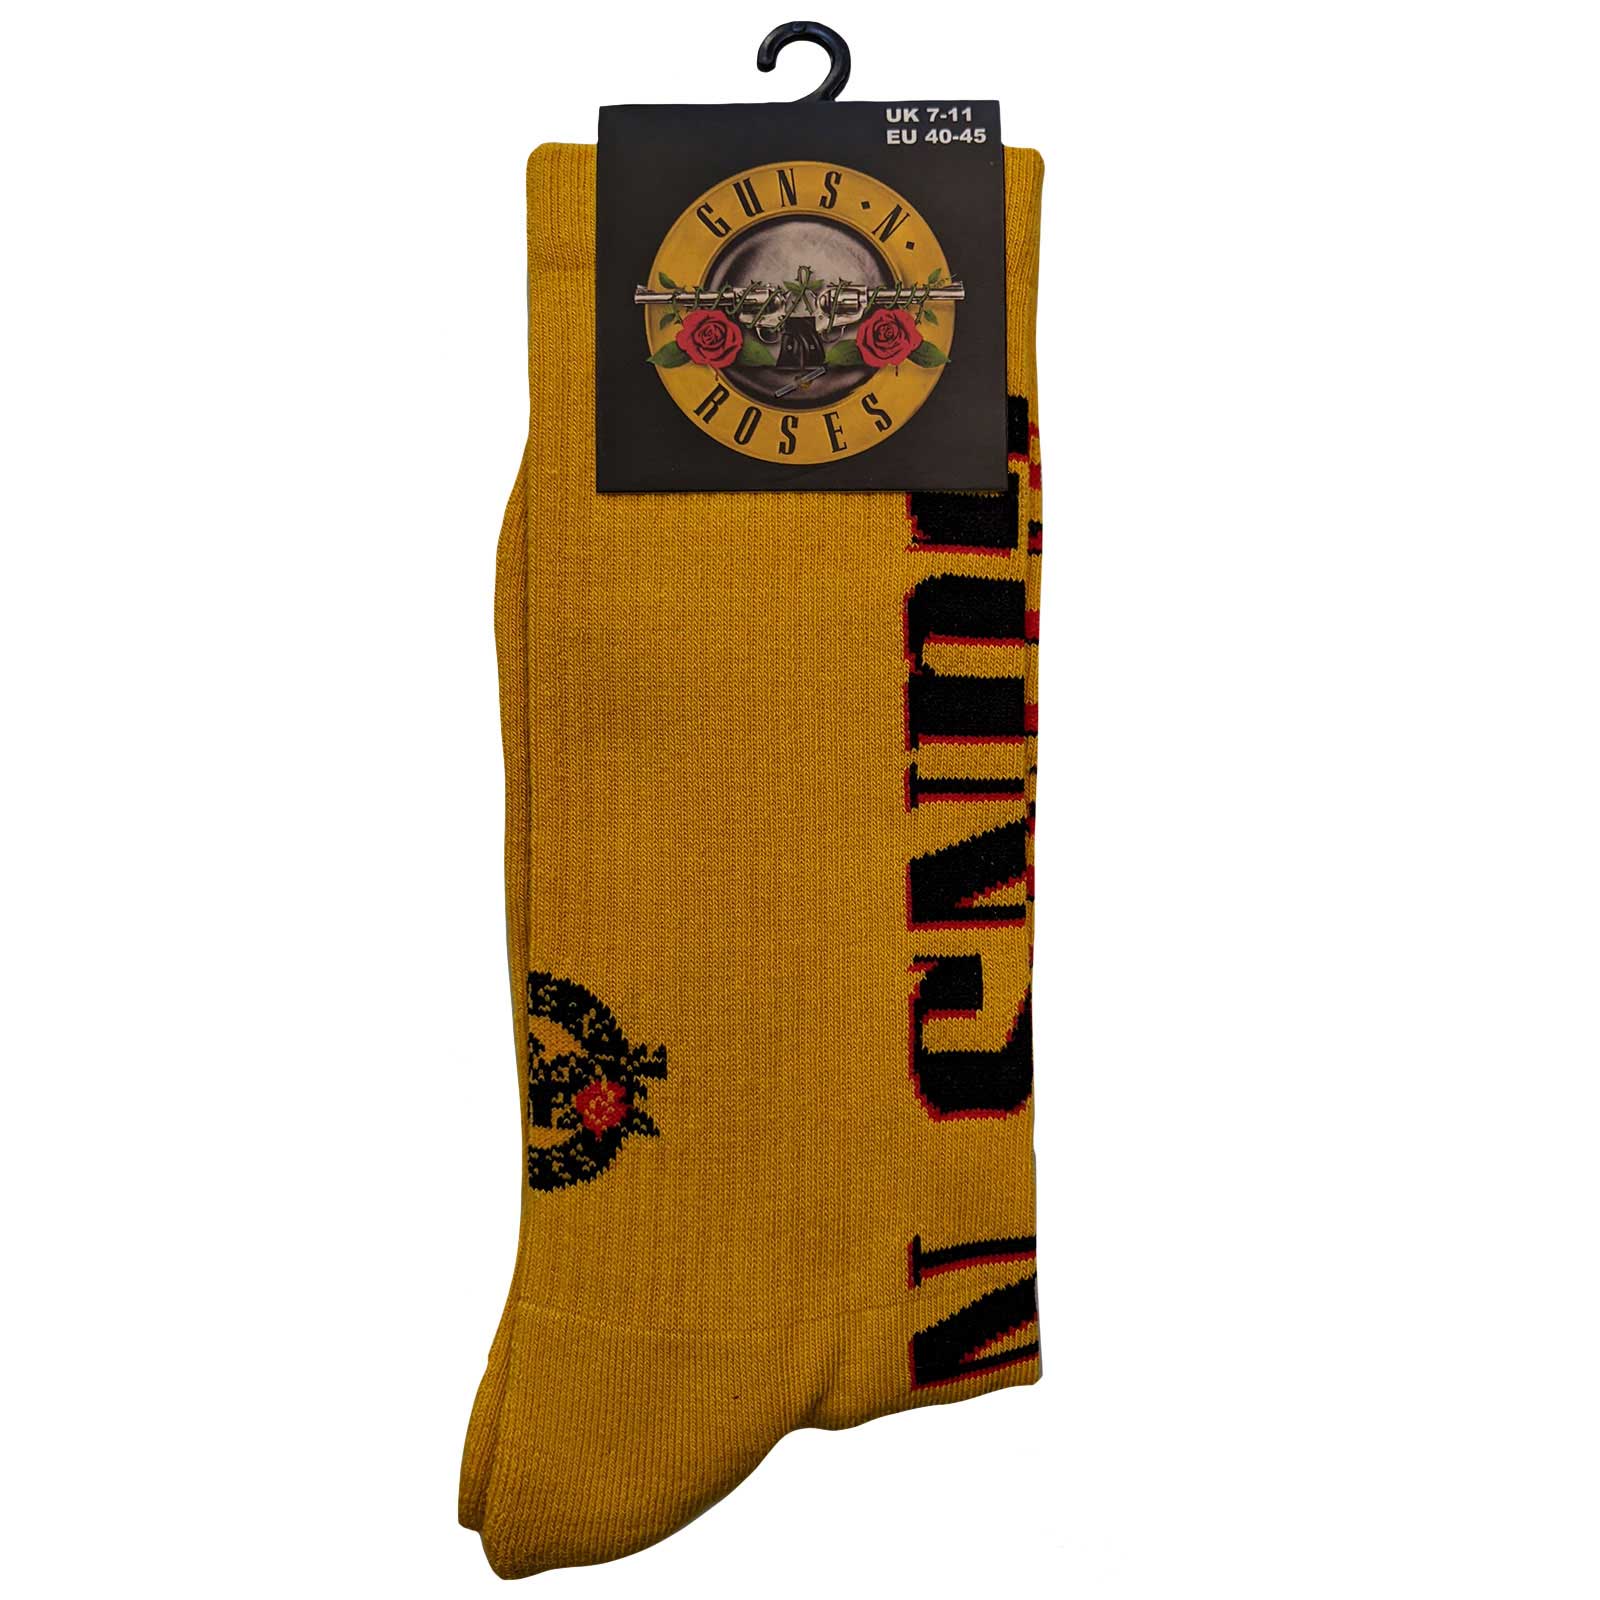 Guns N' Roses Unisex Ankle Socks: Appetite For Destruction